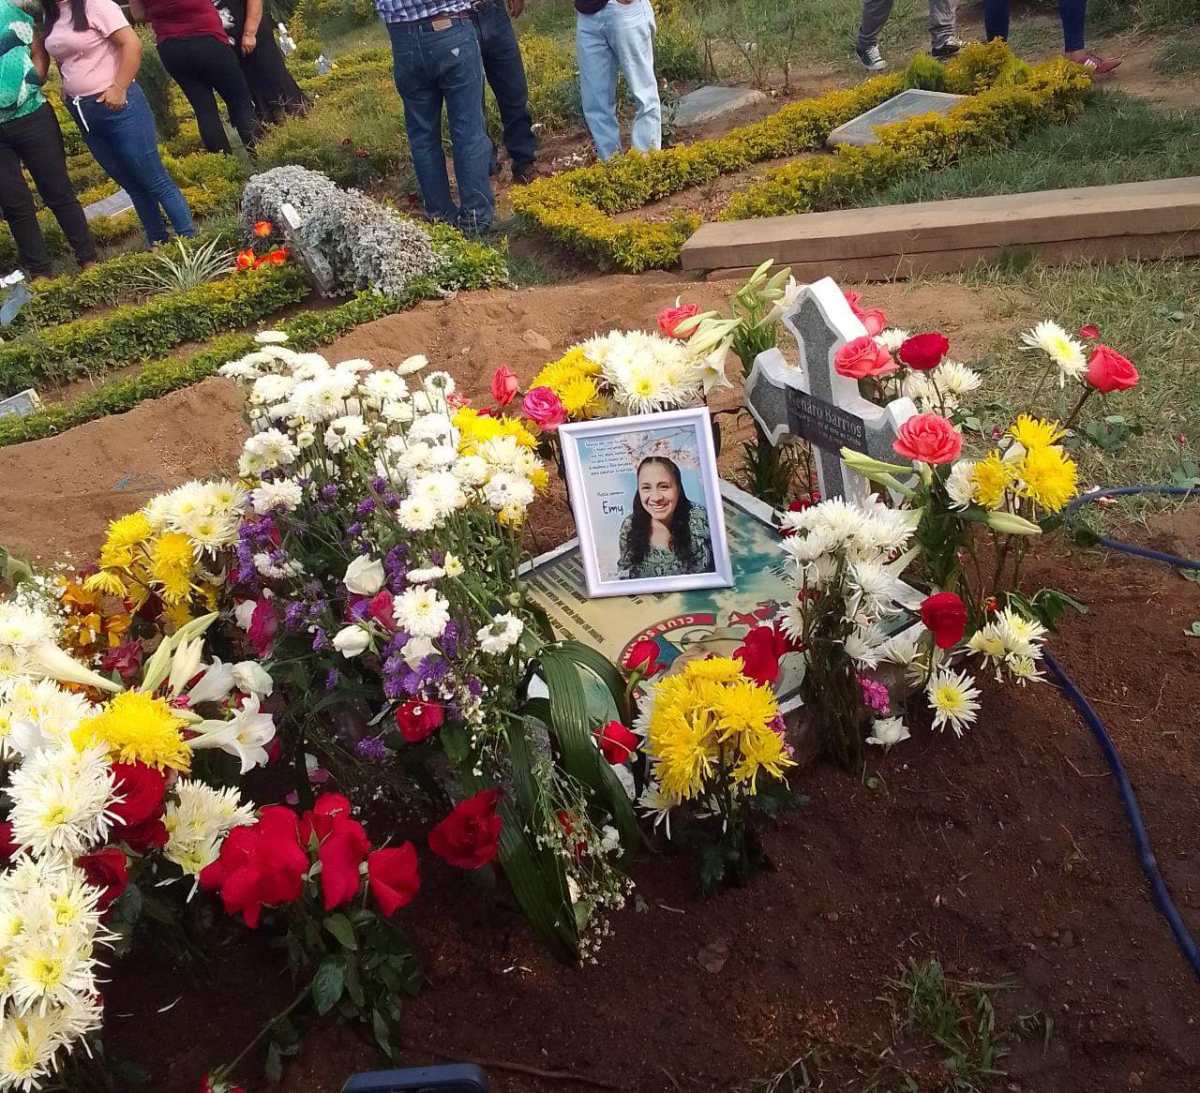 Familiares y amigos despiden a doña Emi, la mujer que murió trágicamente en una pasarela de la calzada Aguilar Batres